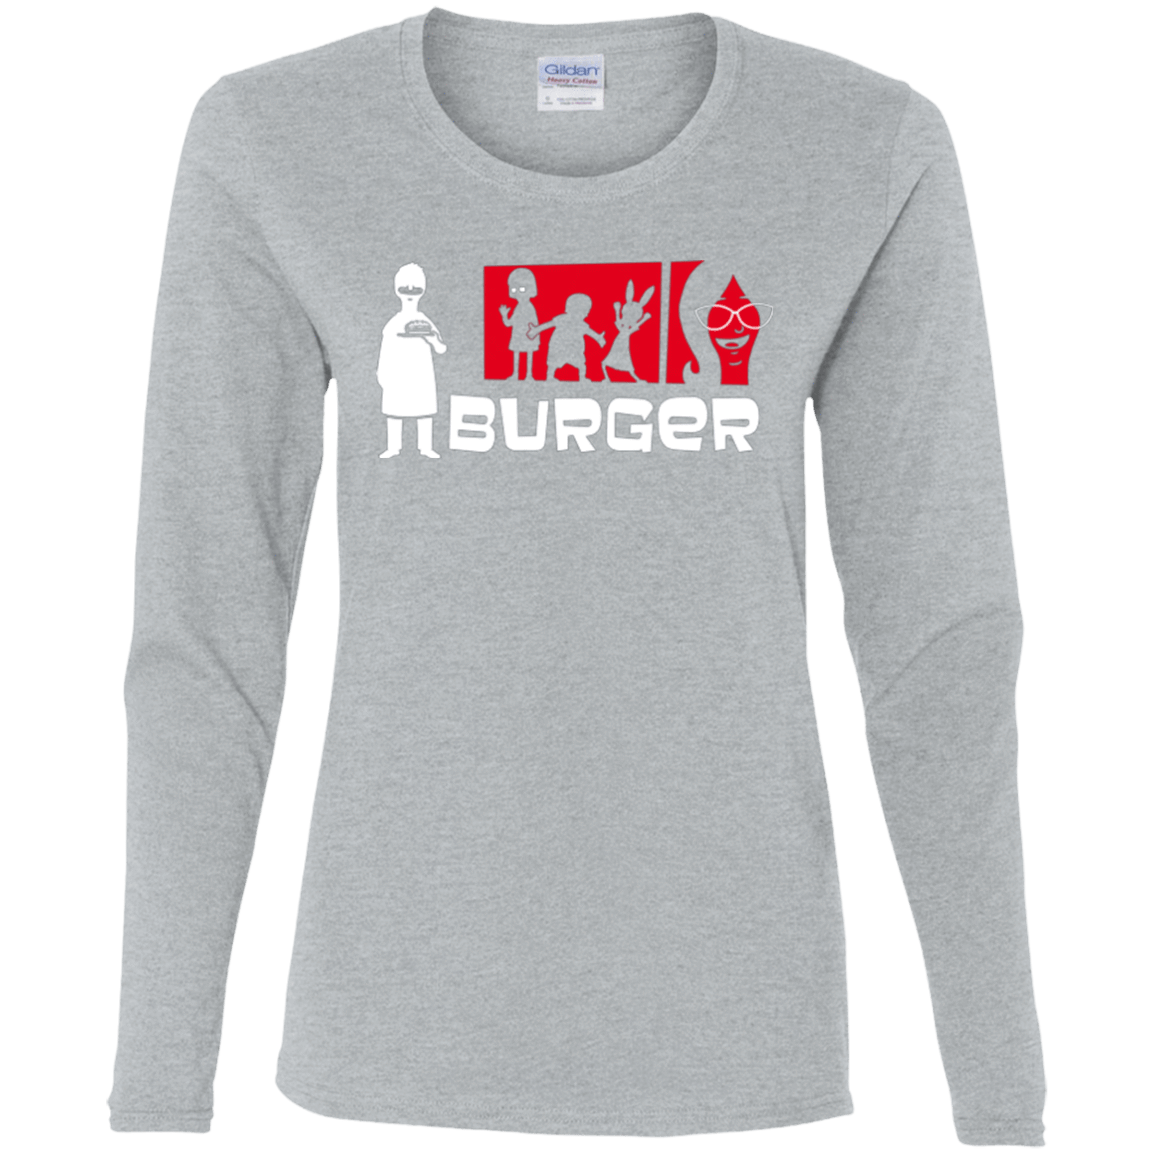 T-Shirts Sport Grey / S Burger Women's Long Sleeve T-Shirt